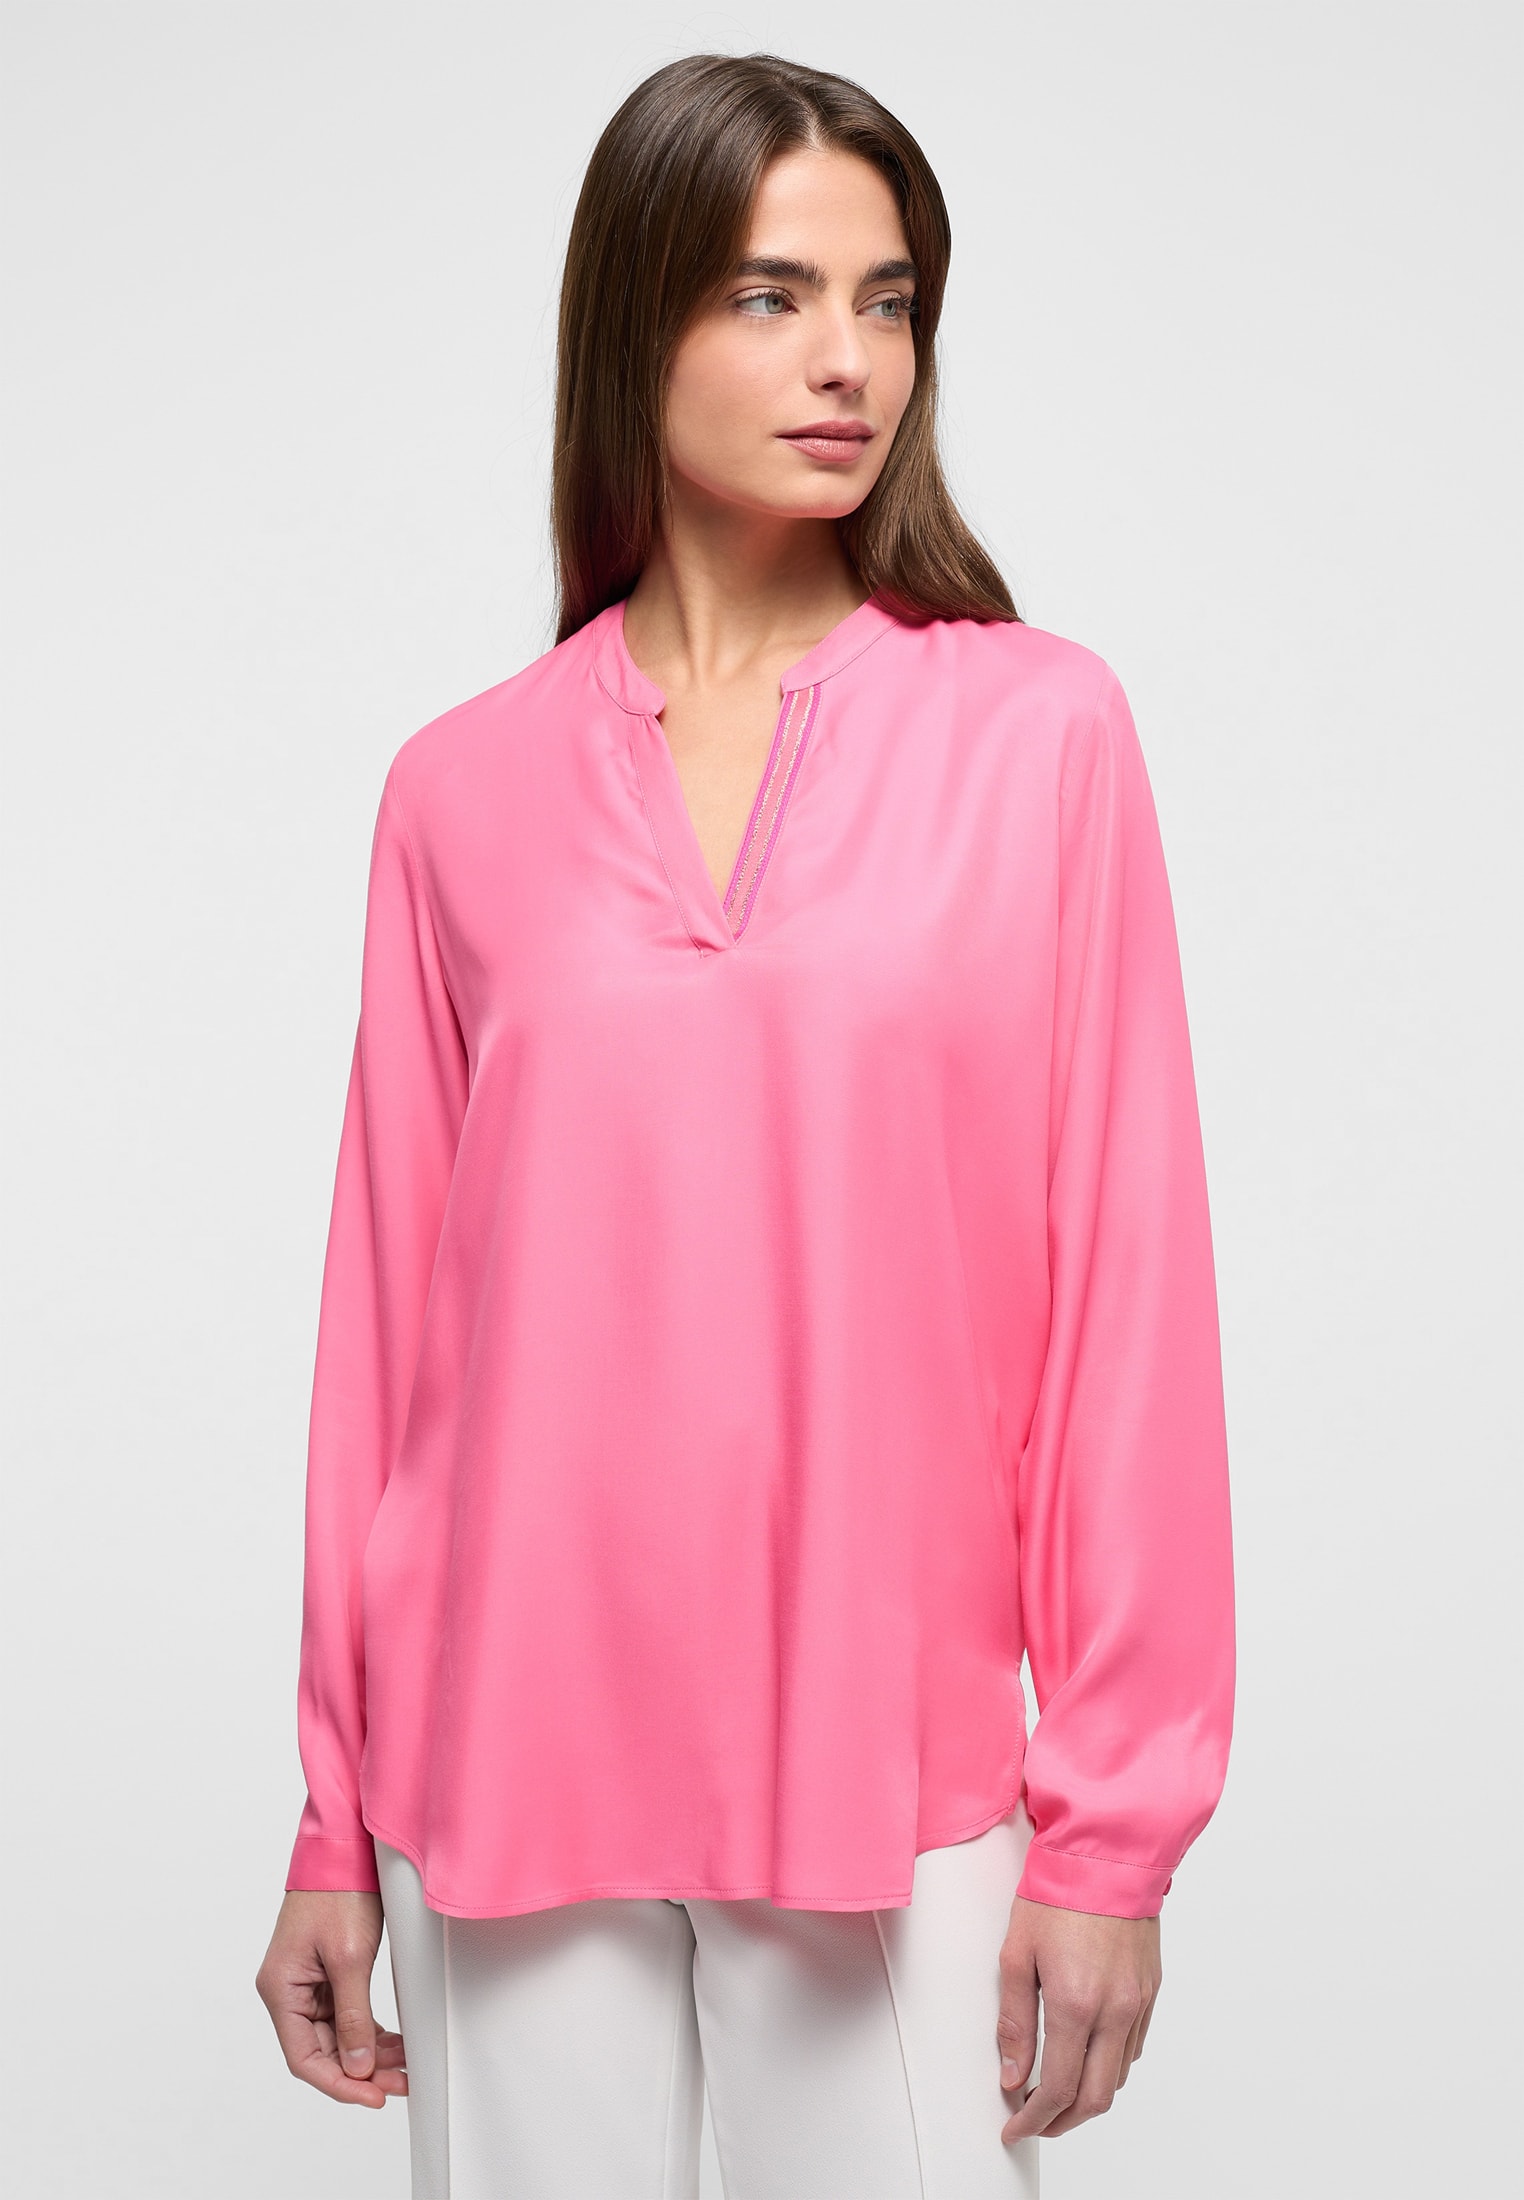 42 | Shirt Langarm pink unifarben Viscose in pink | | 2BL04272-15-21-42-1/1 Bluse |